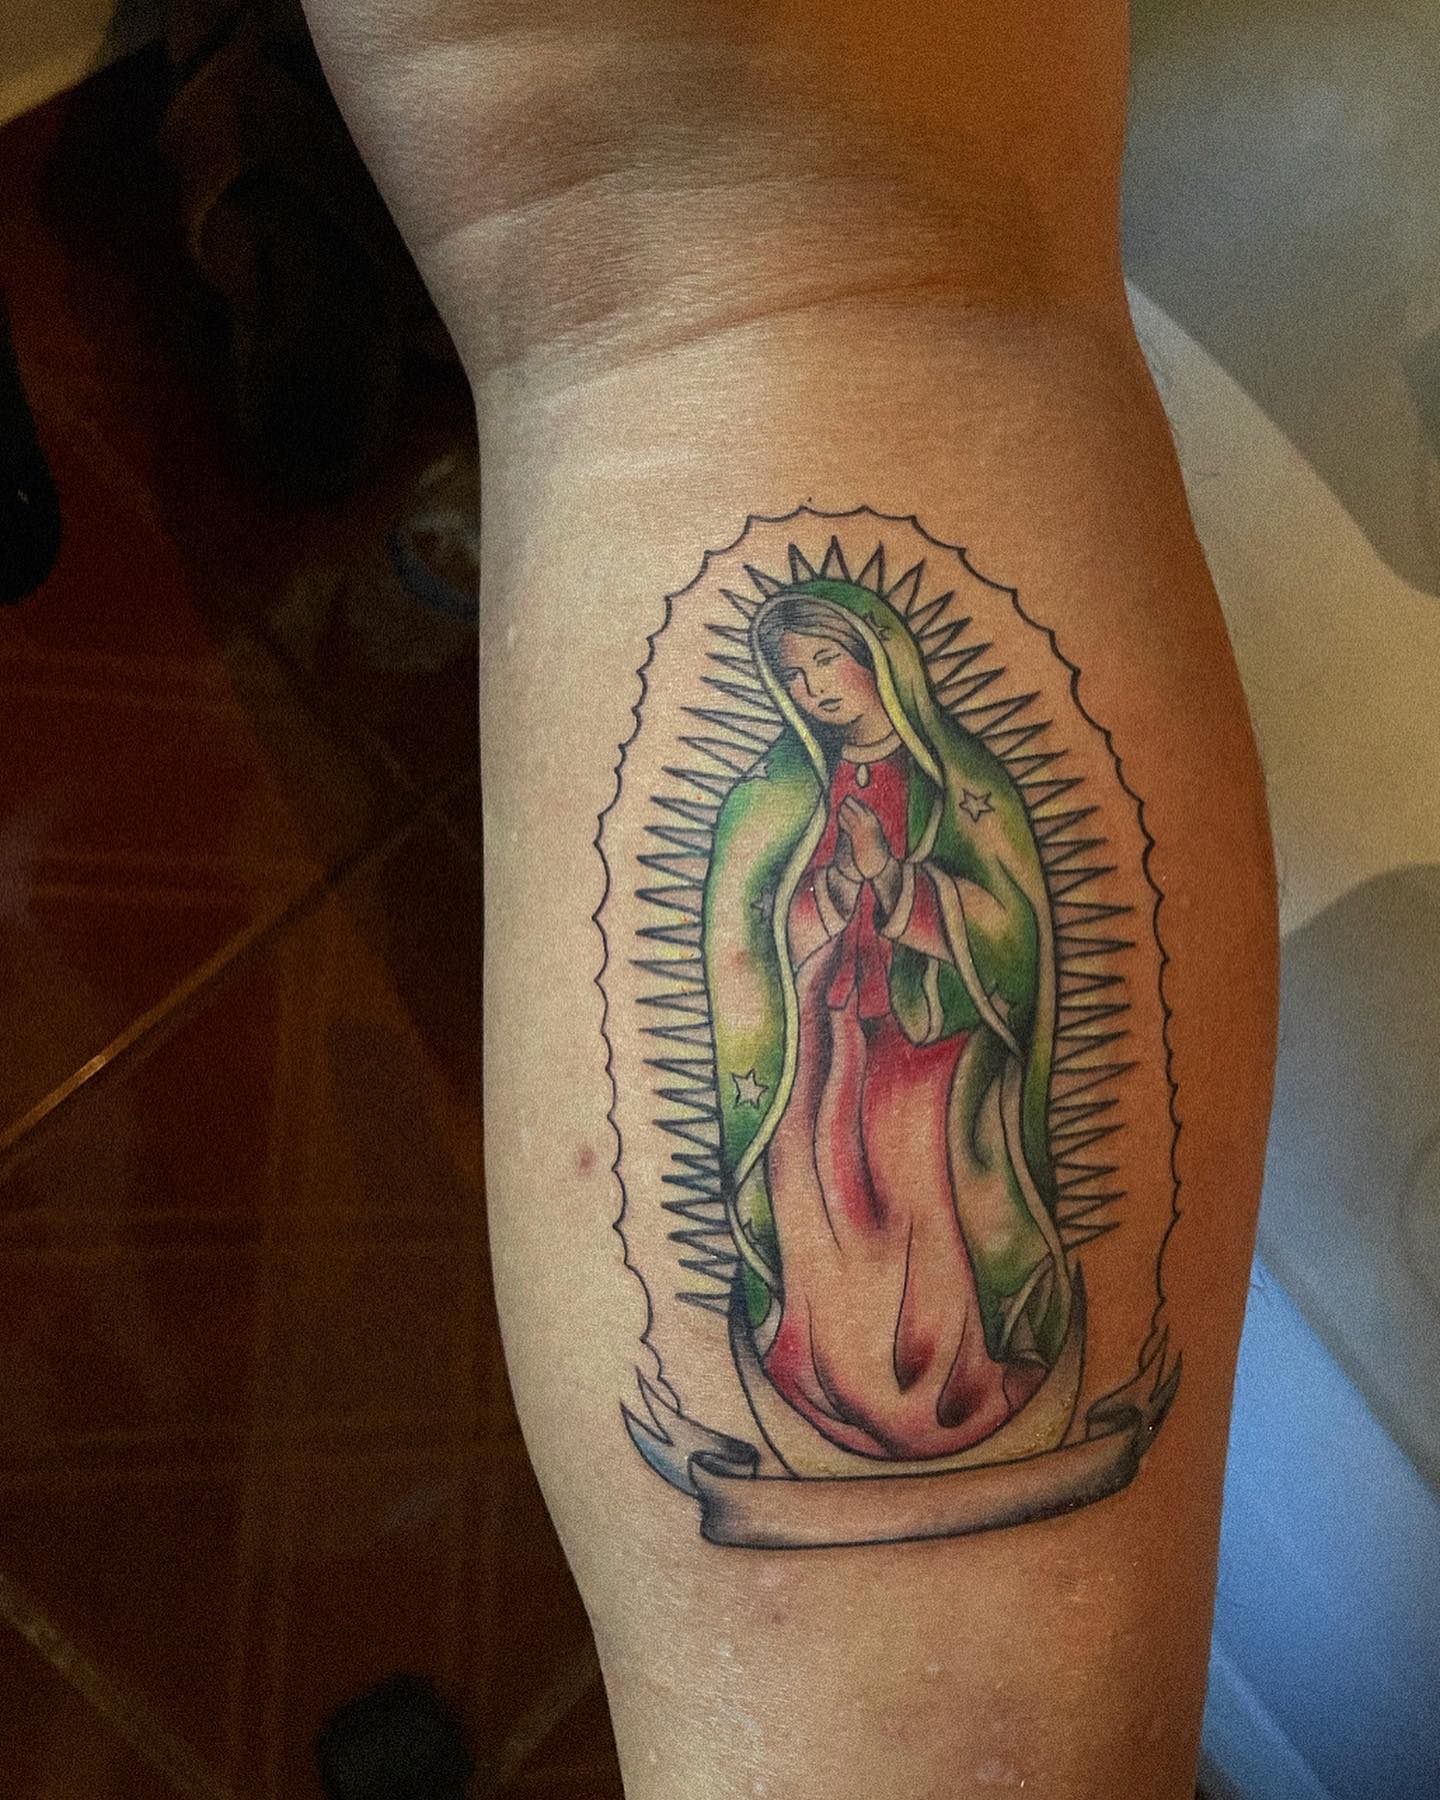 Pequeño tatuaje colorido de la Virgen de Guadalupe.